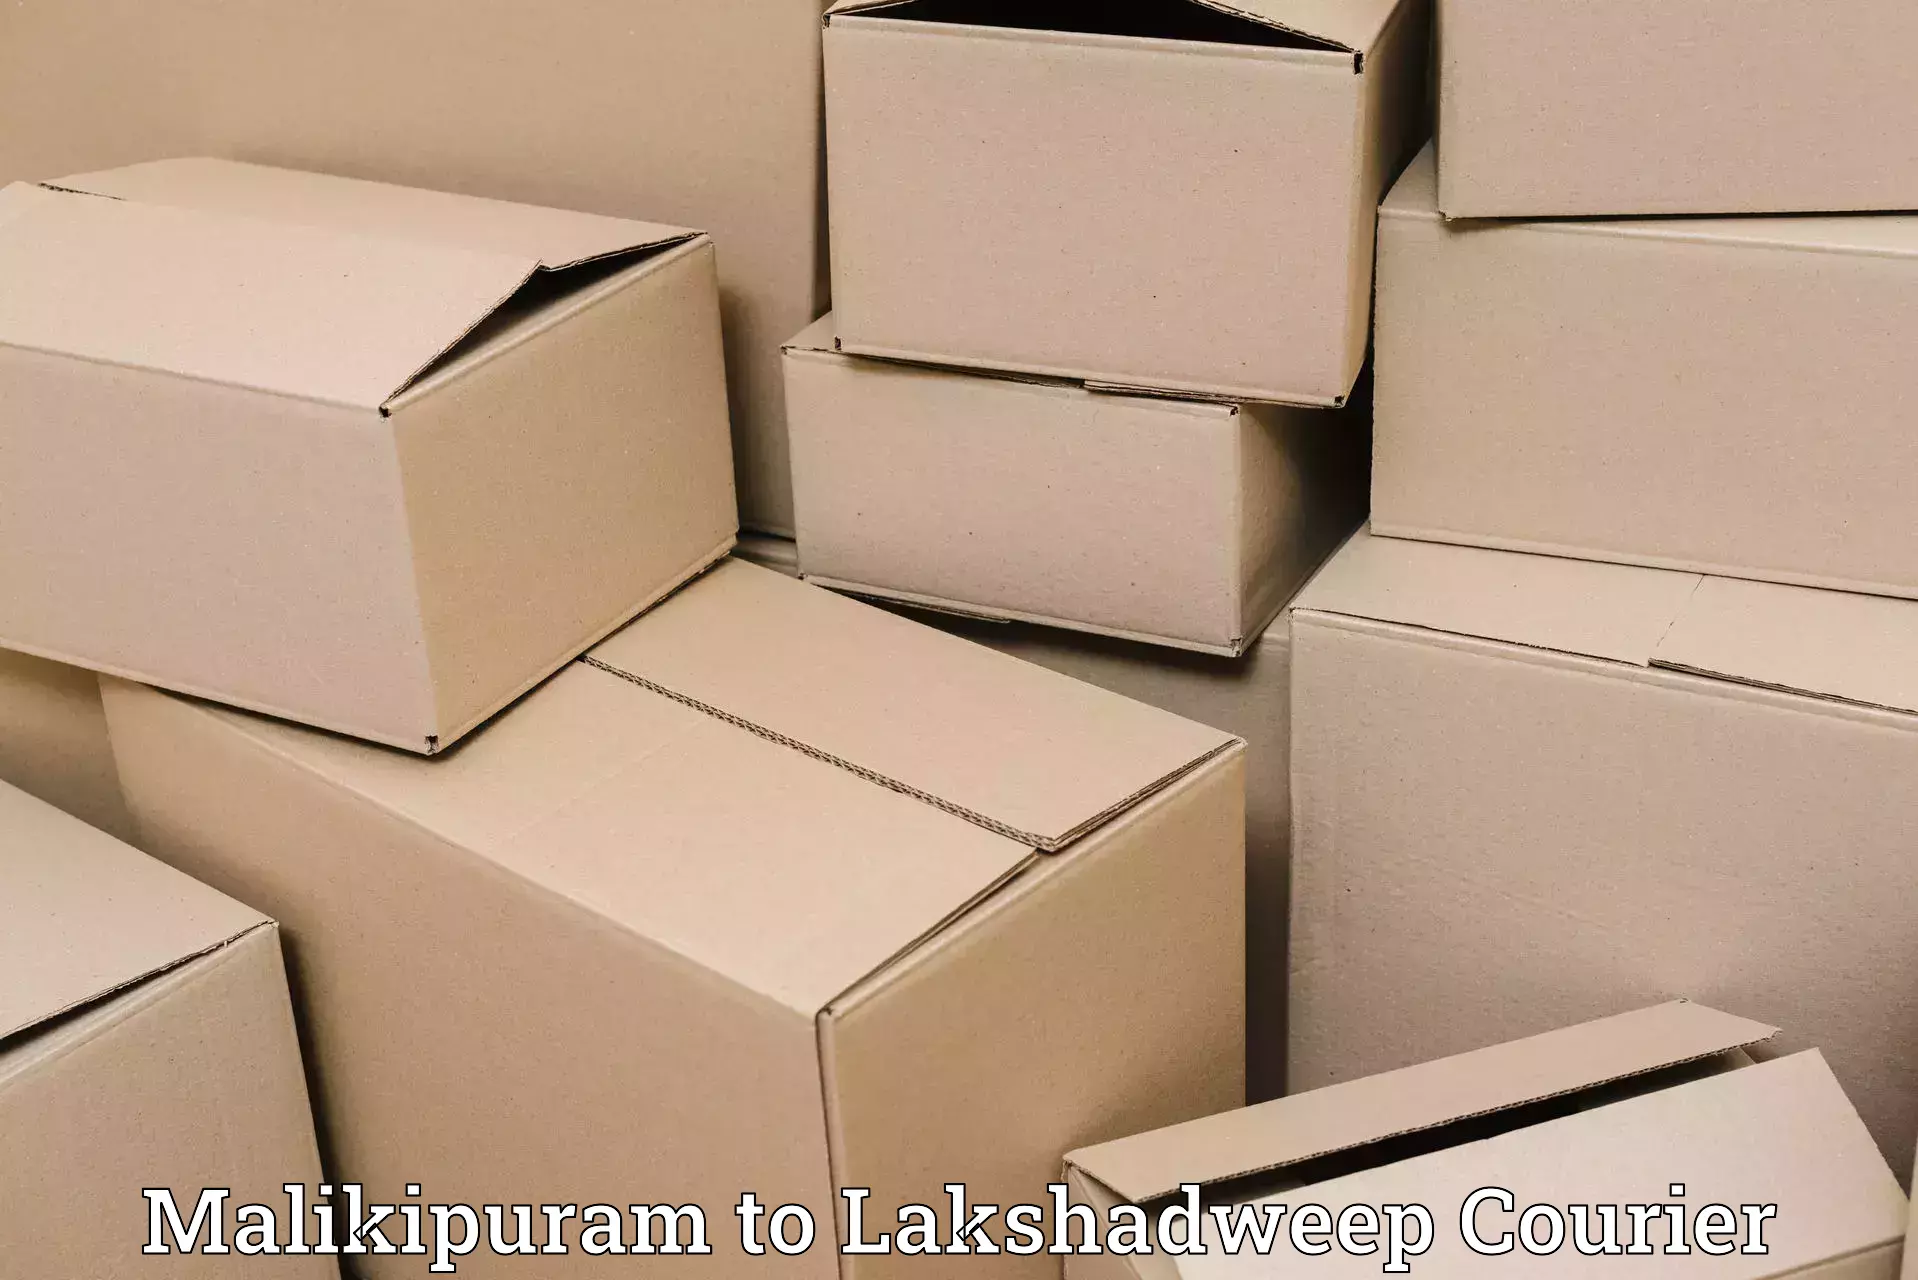 International courier rates Malikipuram to Lakshadweep